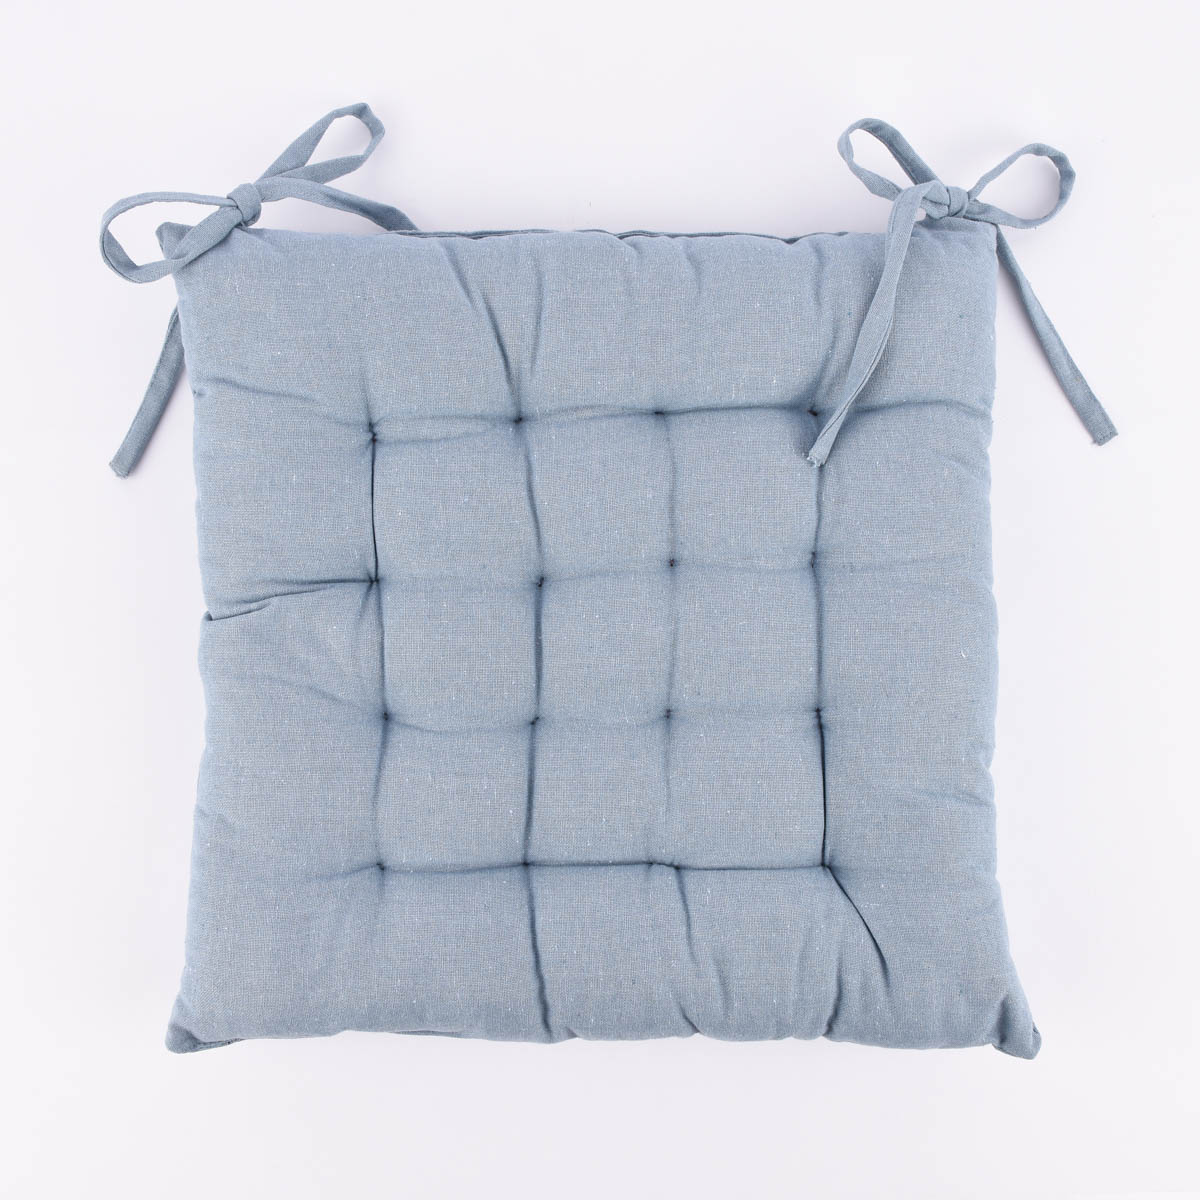 Stuhlkissen Sitzkissen aus Baumwolle mit Binderbändern und